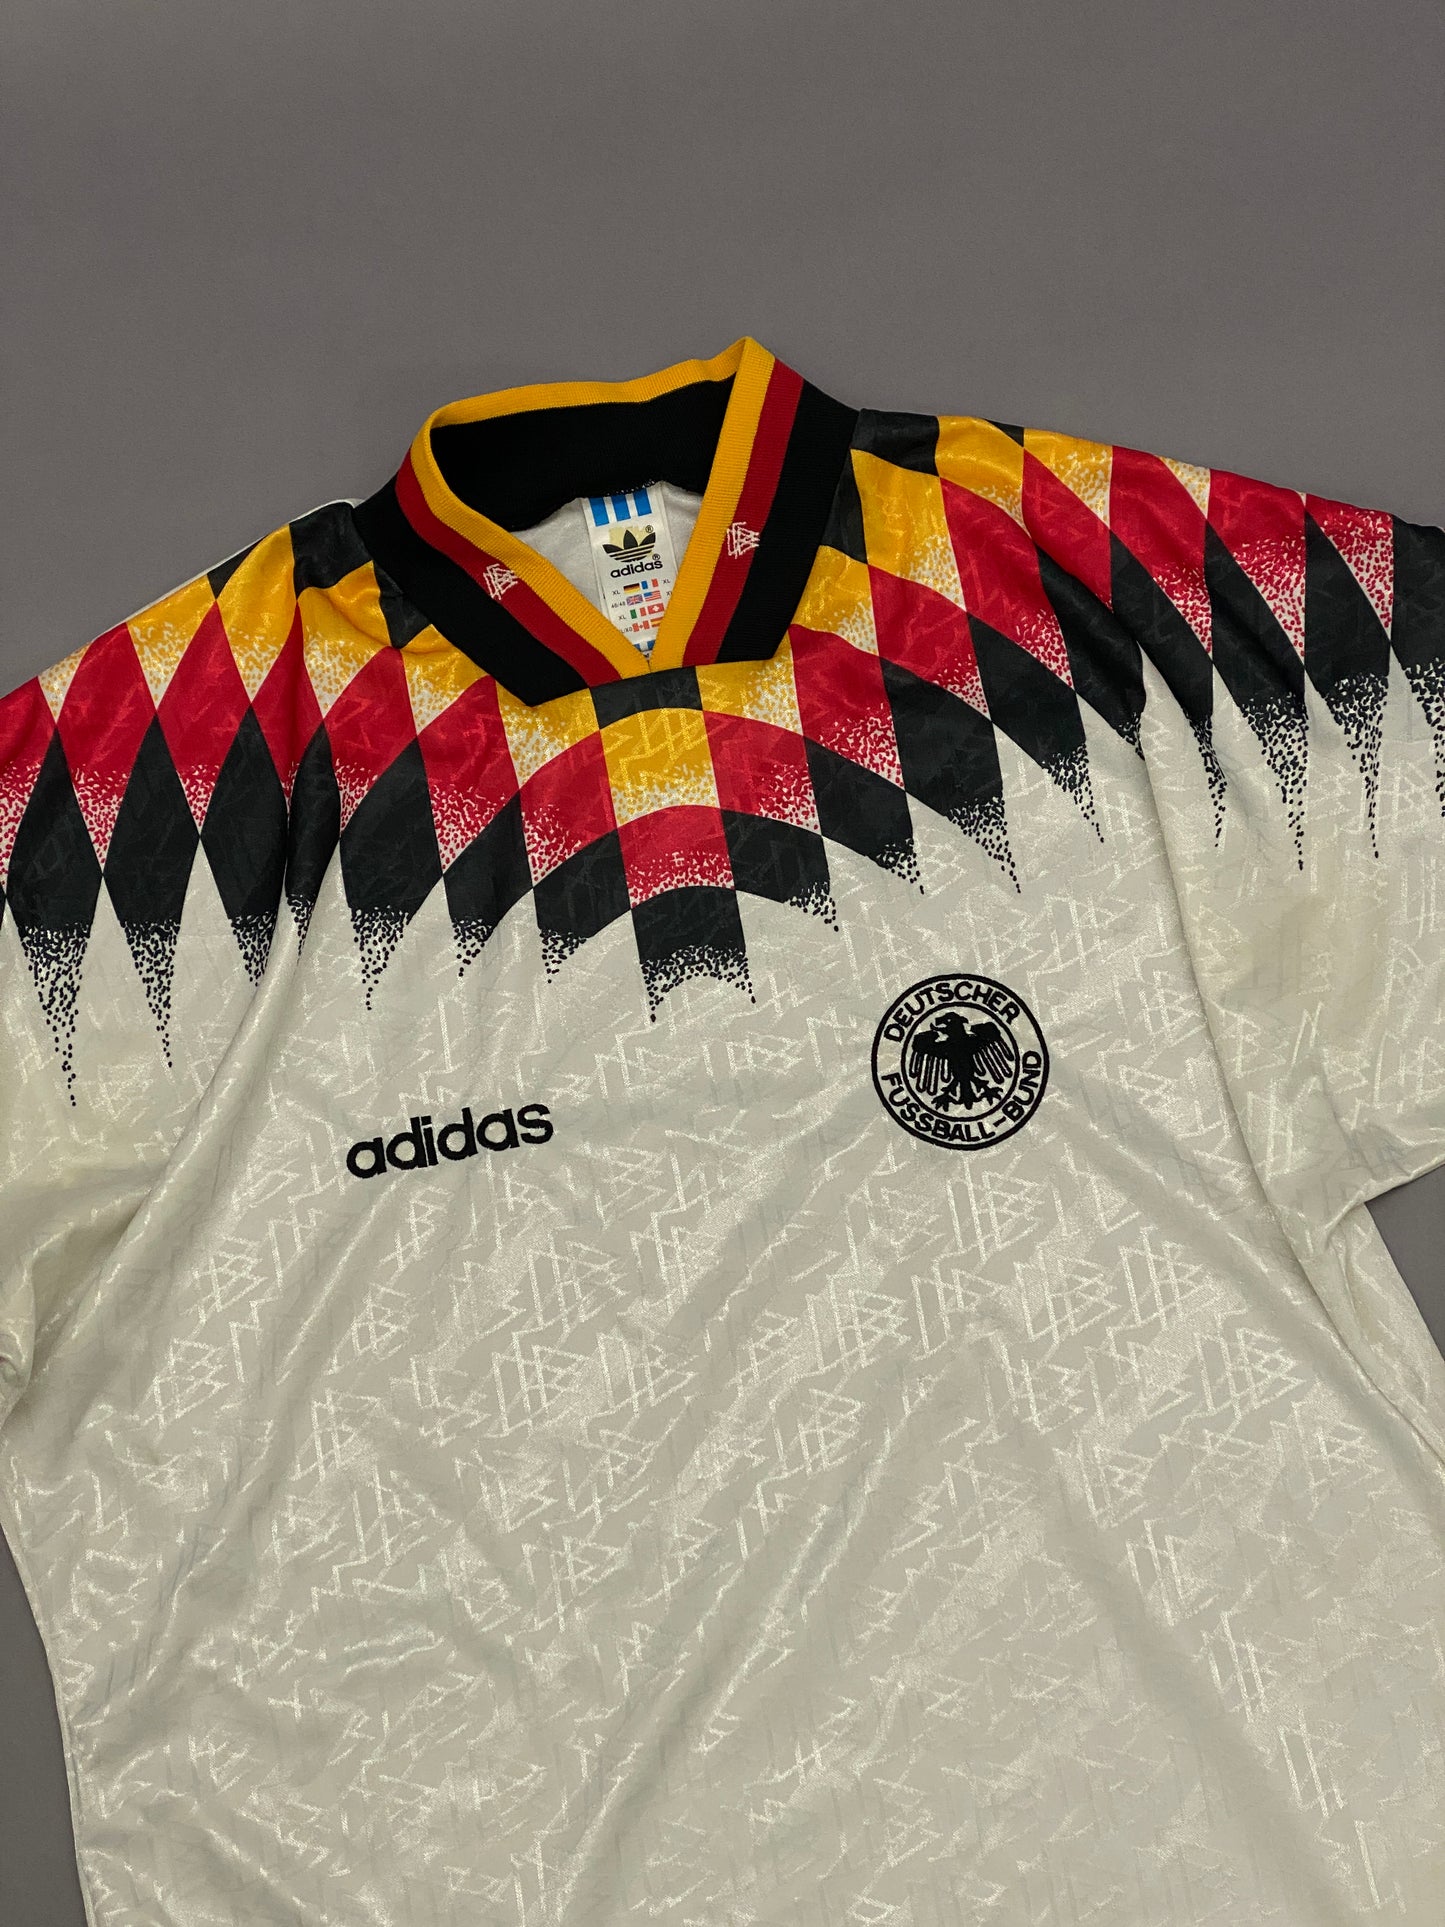 Jersey Adidas Alemania 1994 Vintage